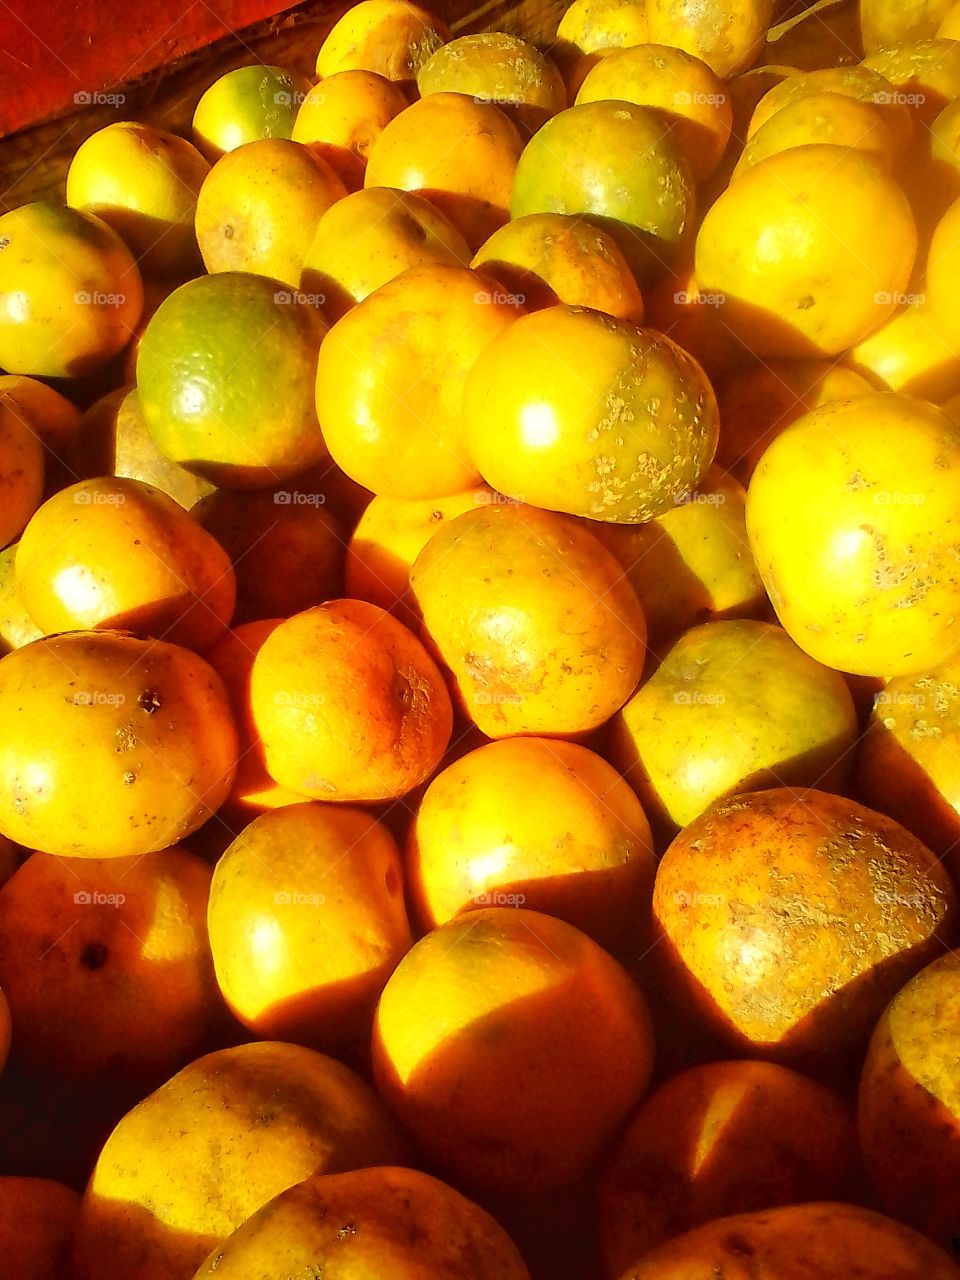 This orange fruit is very sweet